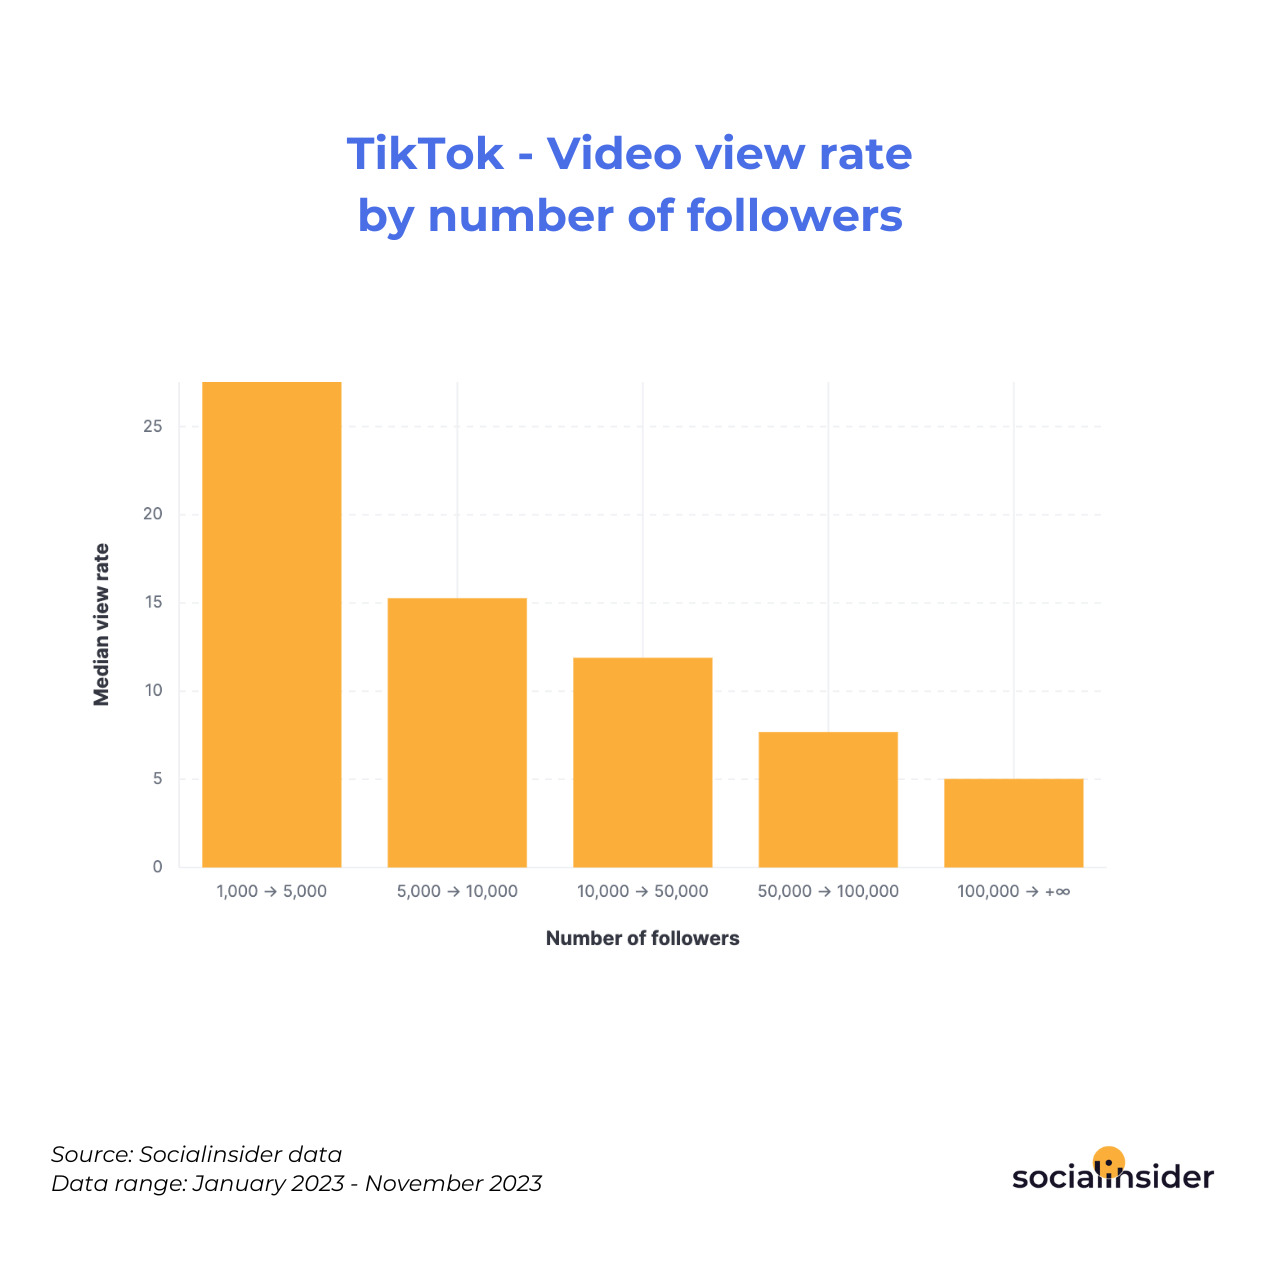 https://www.socialinsider.io/assets/img/socialinsider/stats/graphs/tiktok_video_view_rate_number_followers.jpg